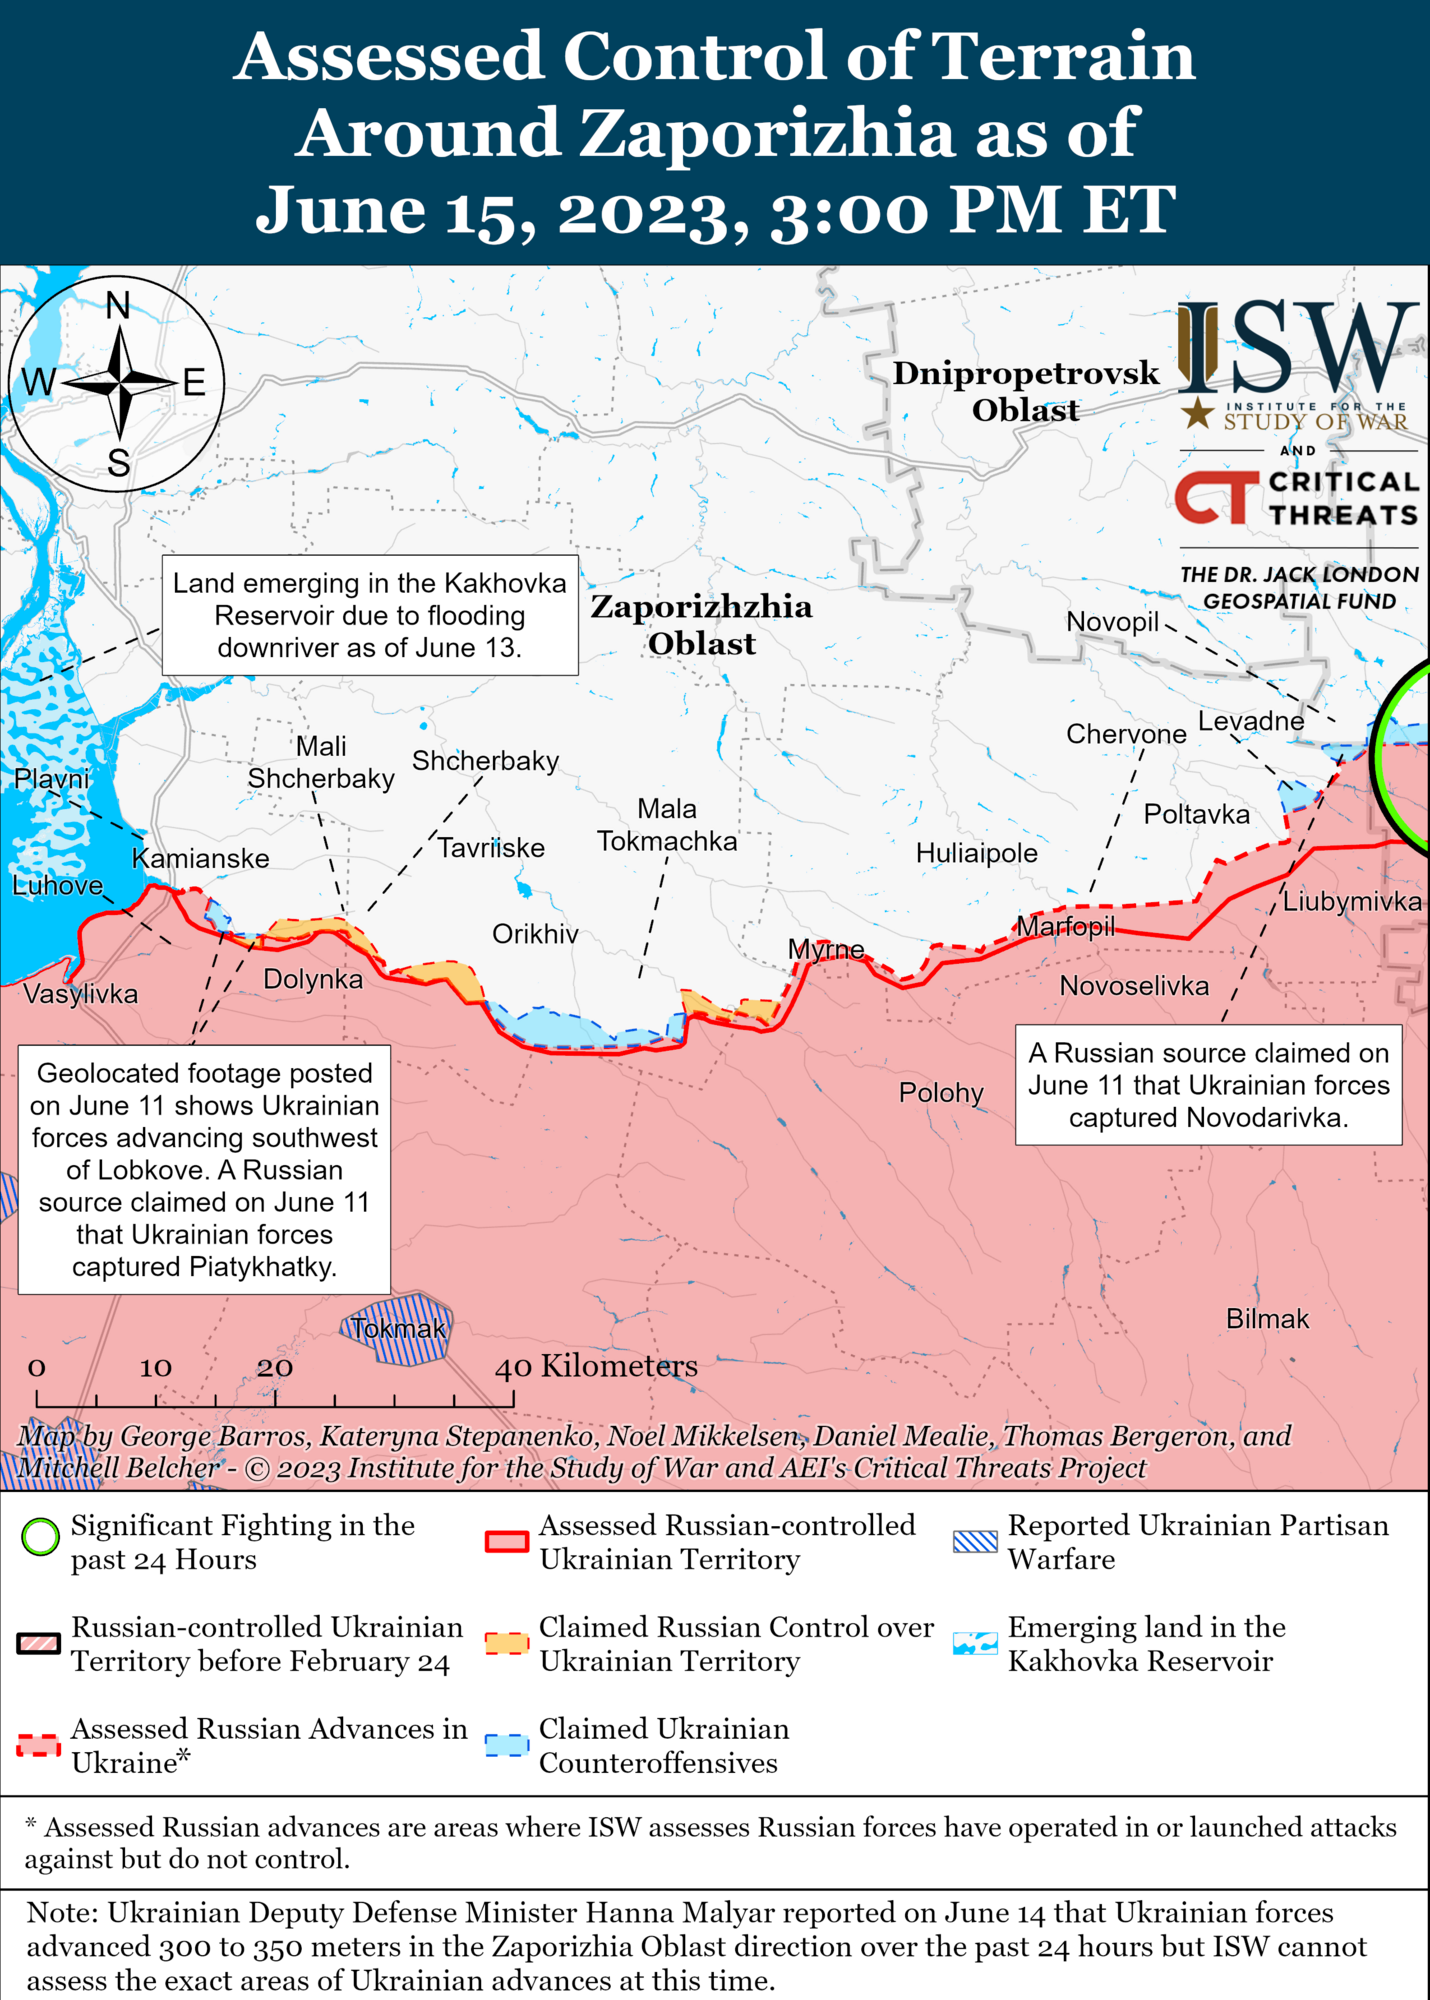 ВСУ наращивают темп контрнаступательных операций, Россия начинает реорганизацию войск – ISW